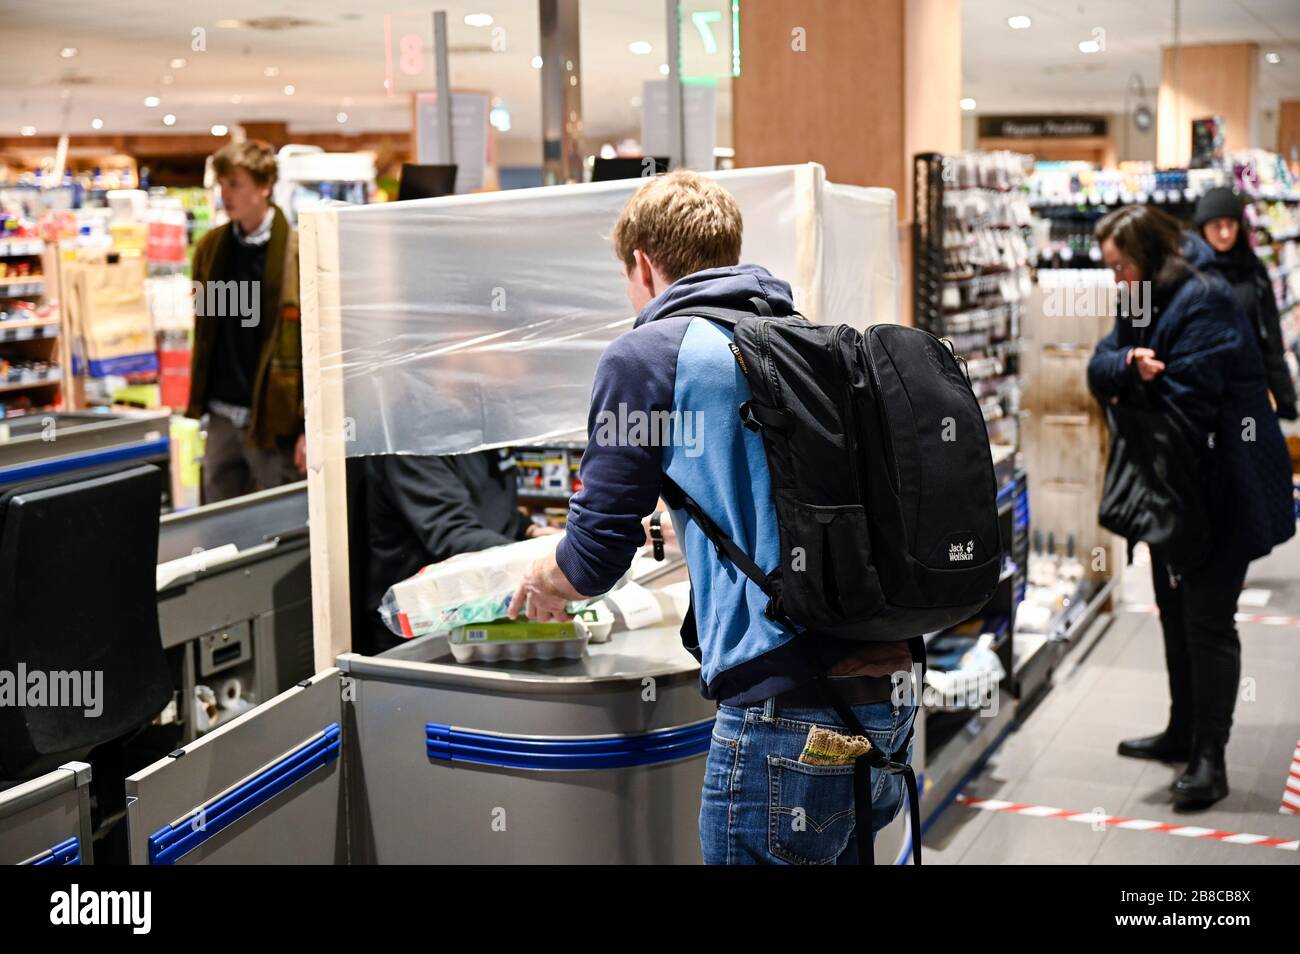 ALLEMAGNE, Hambourg, Corona virus, COVID-19 , supermarché avec protection pour le caissier pour éviter l'infection Banque D'Images